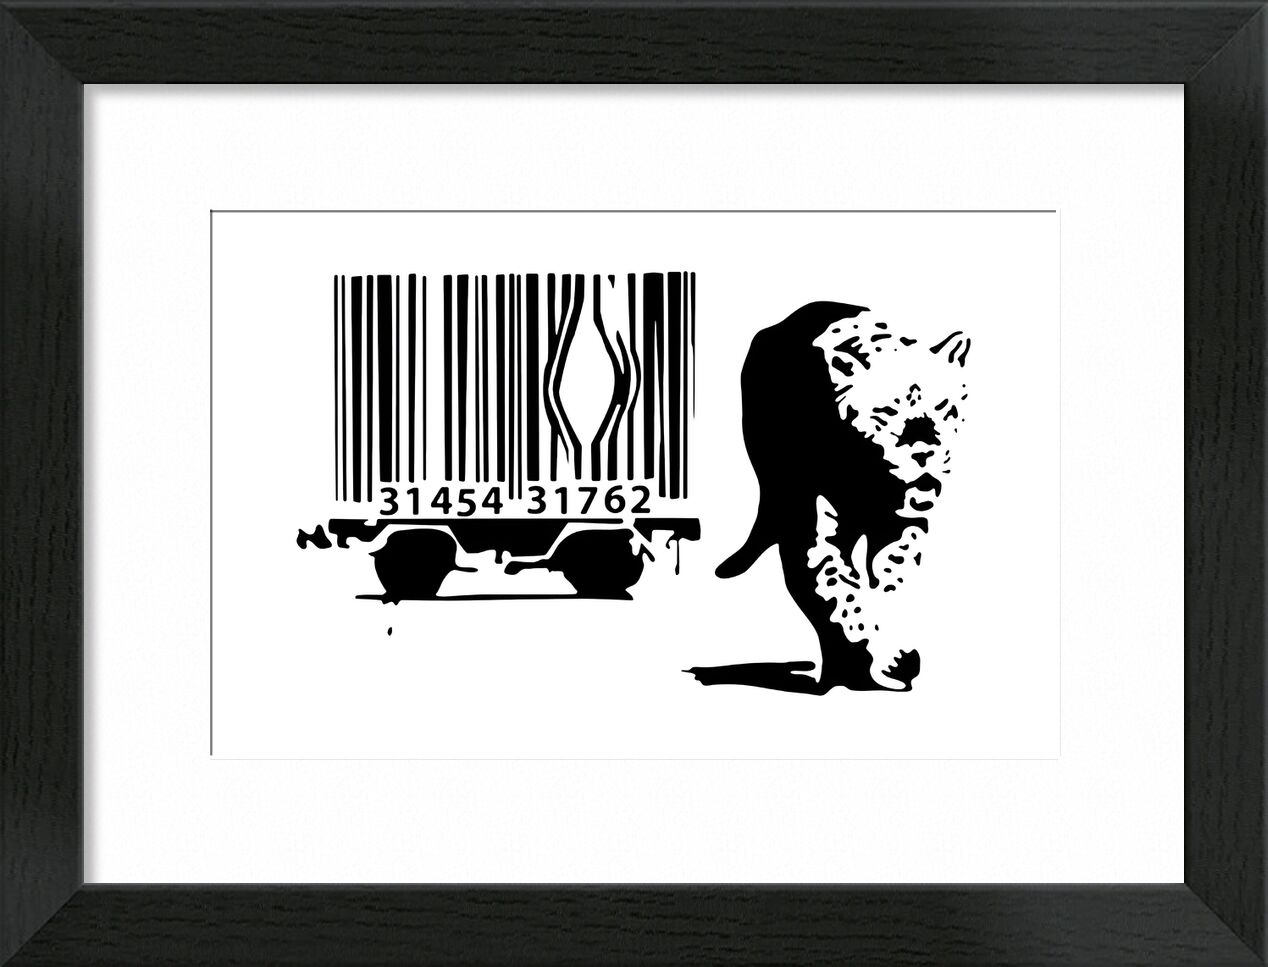 Barcode - BANKSY von Bildende Kunst, Prodi Art, banksy, Leopard, Barcode, Verbrauch